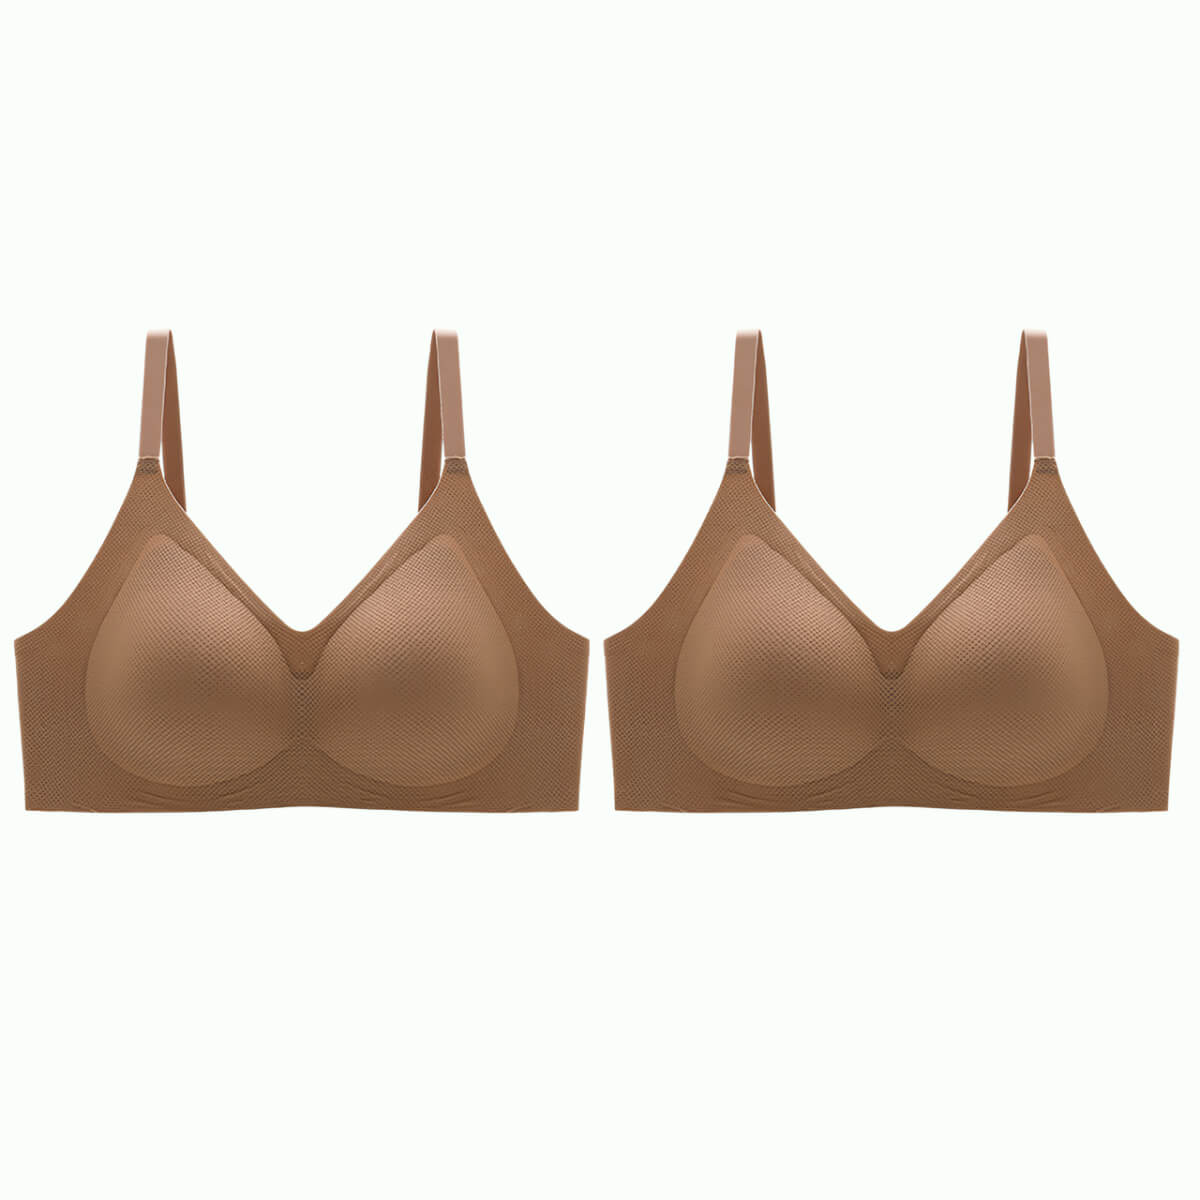 Two Woman's bra size 34B